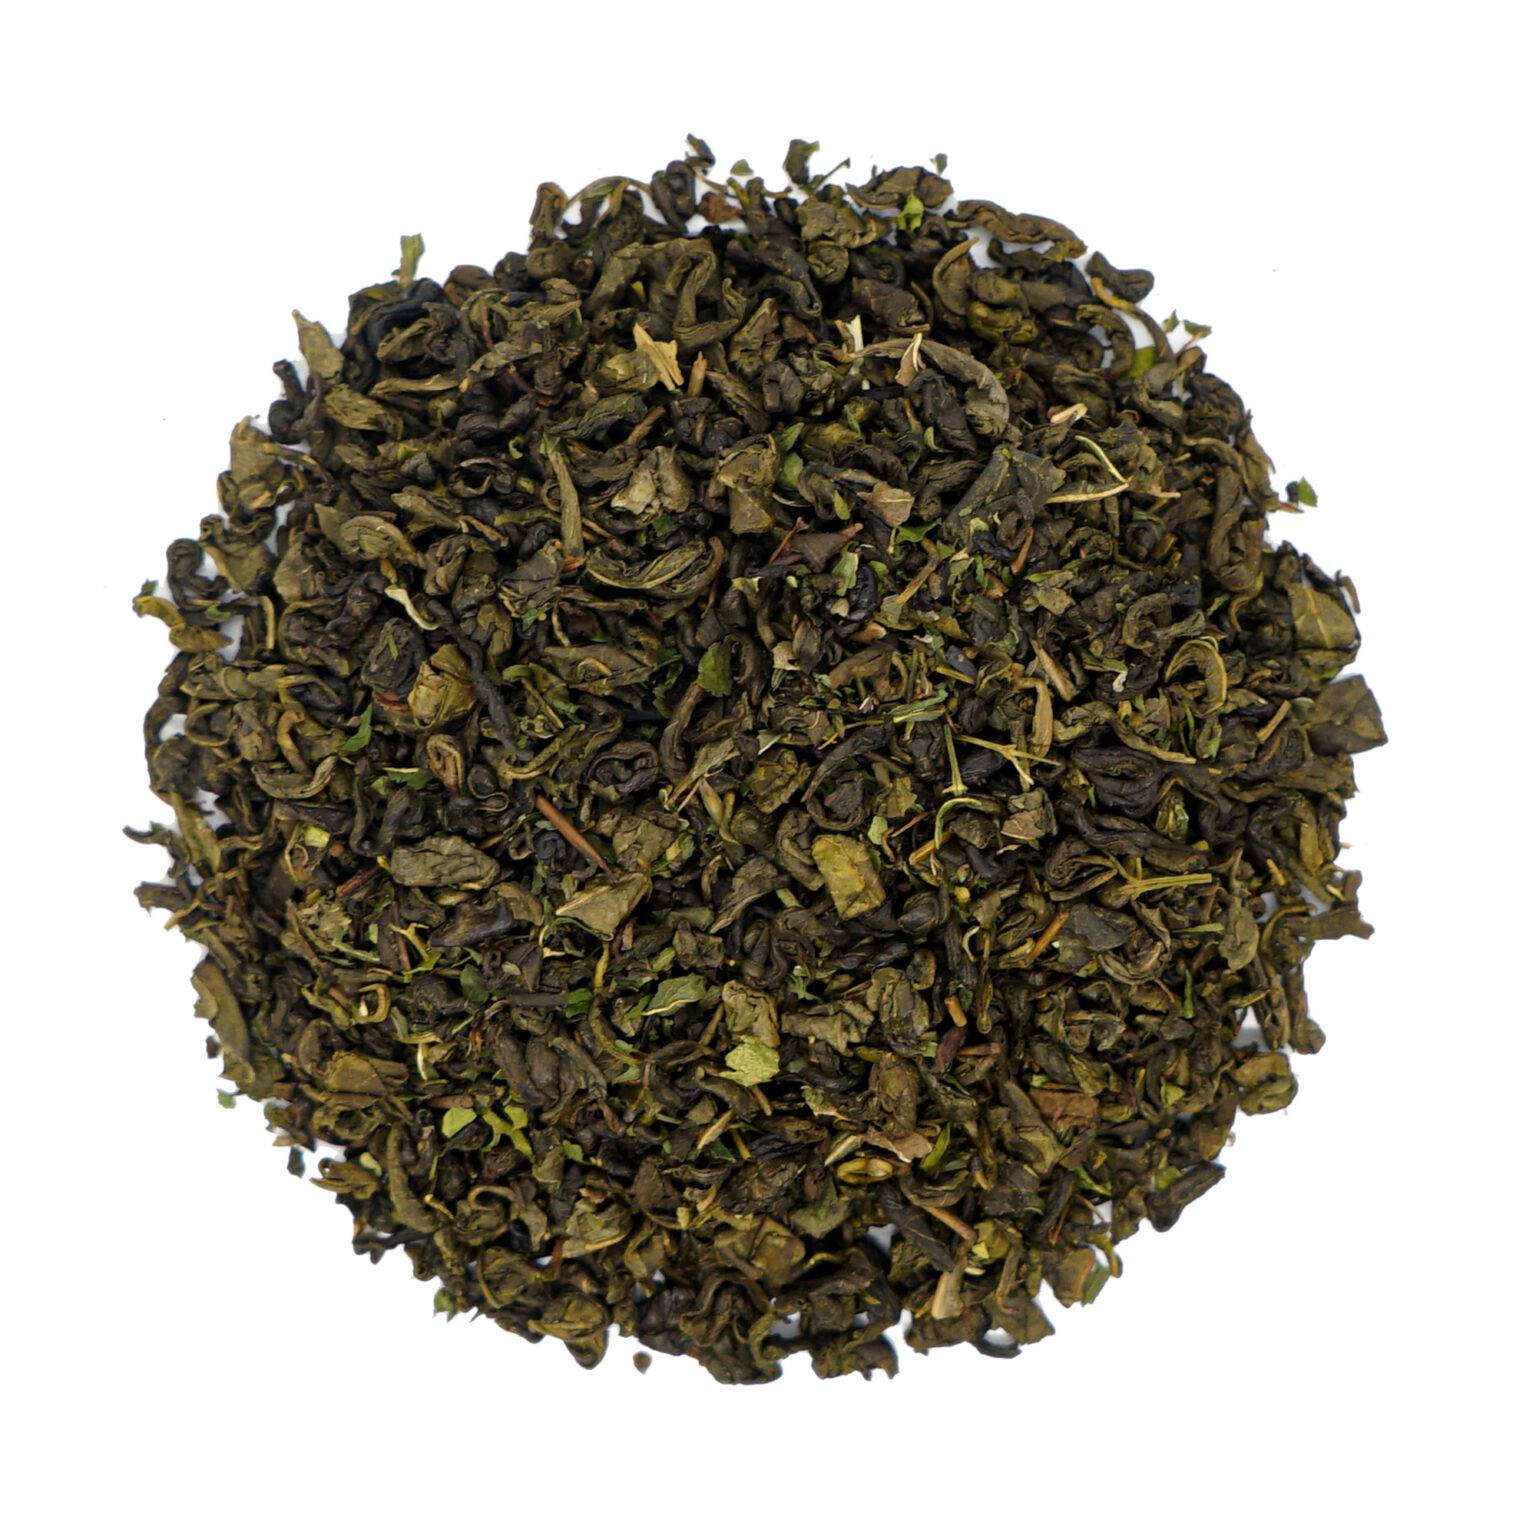 Herbata Casablanca - Zmysłowy smak Orientu